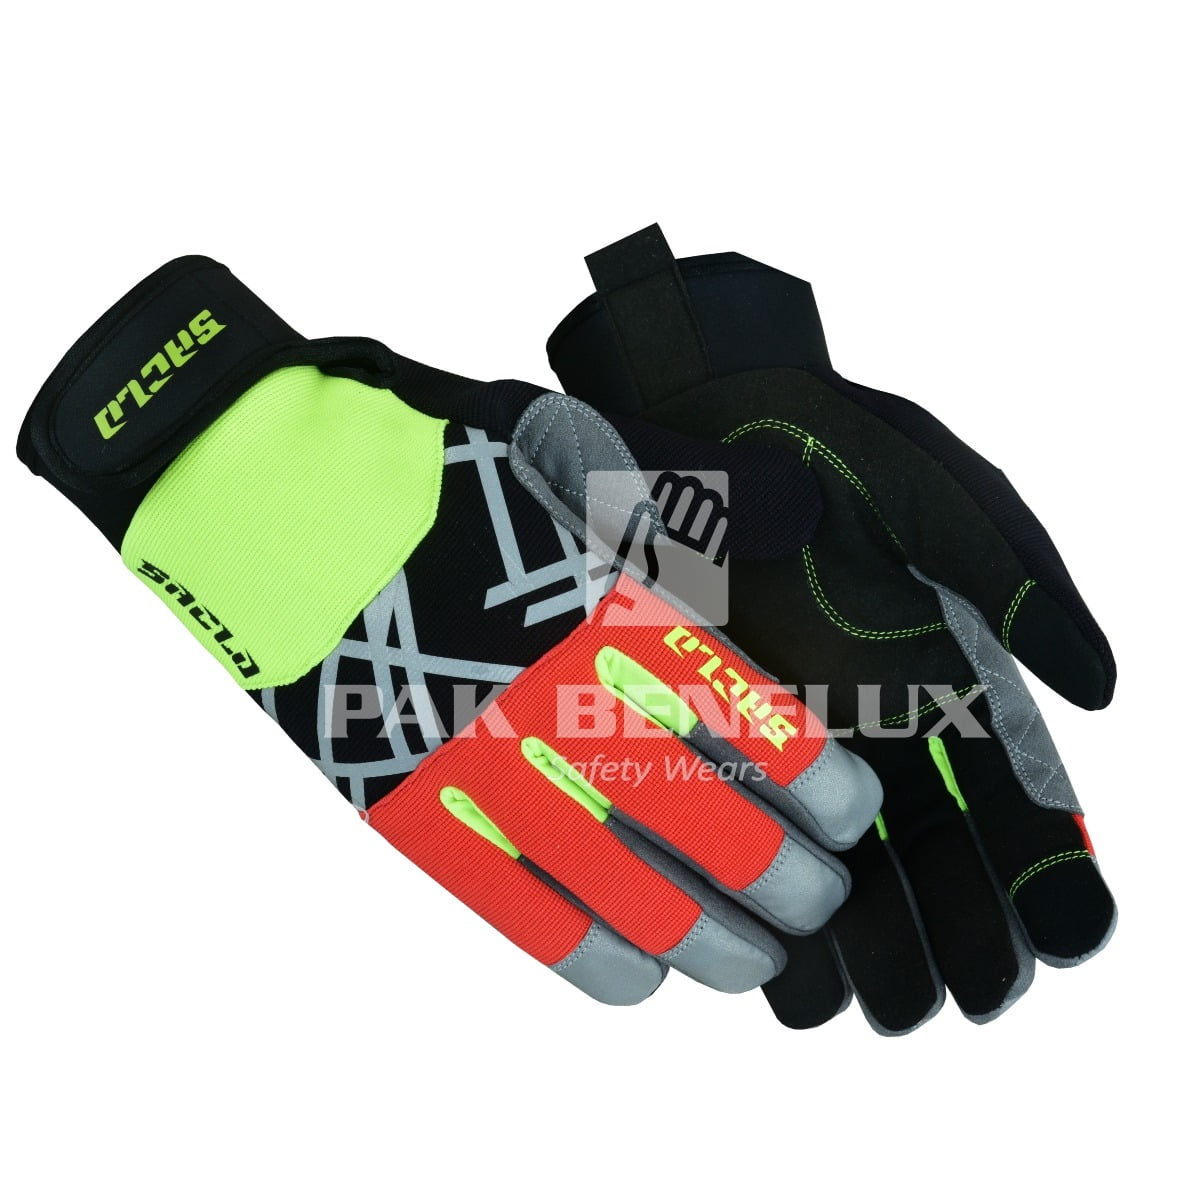 Hi-Visibility Gloves